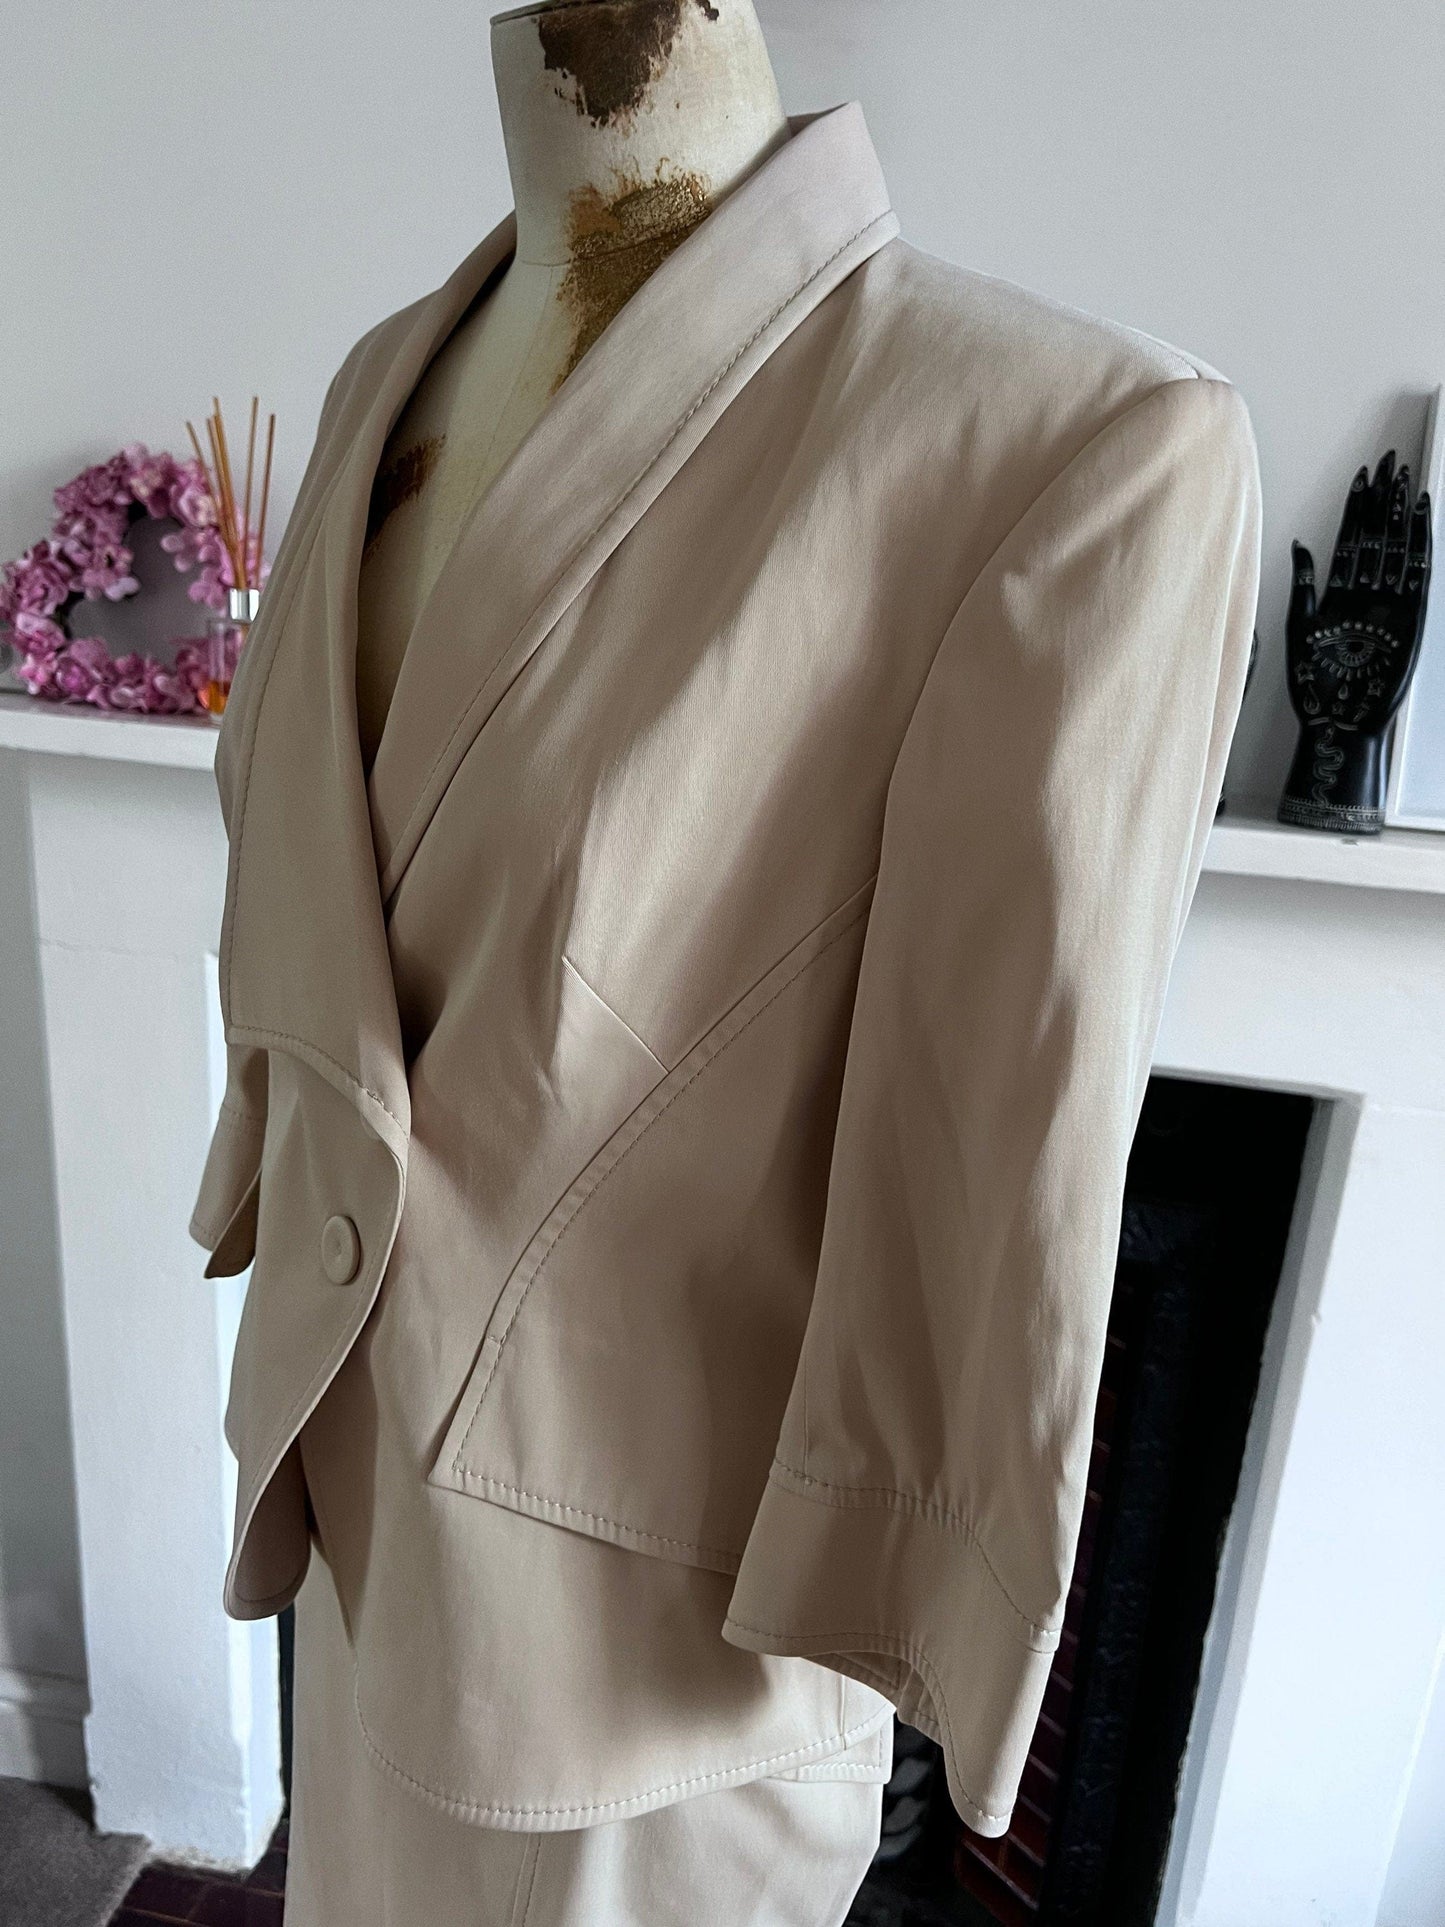 Cream vintage Suit Safari Style 1980s Skirt Suit - longline pencil Skirt and longline blazer with pocket details Size EU44